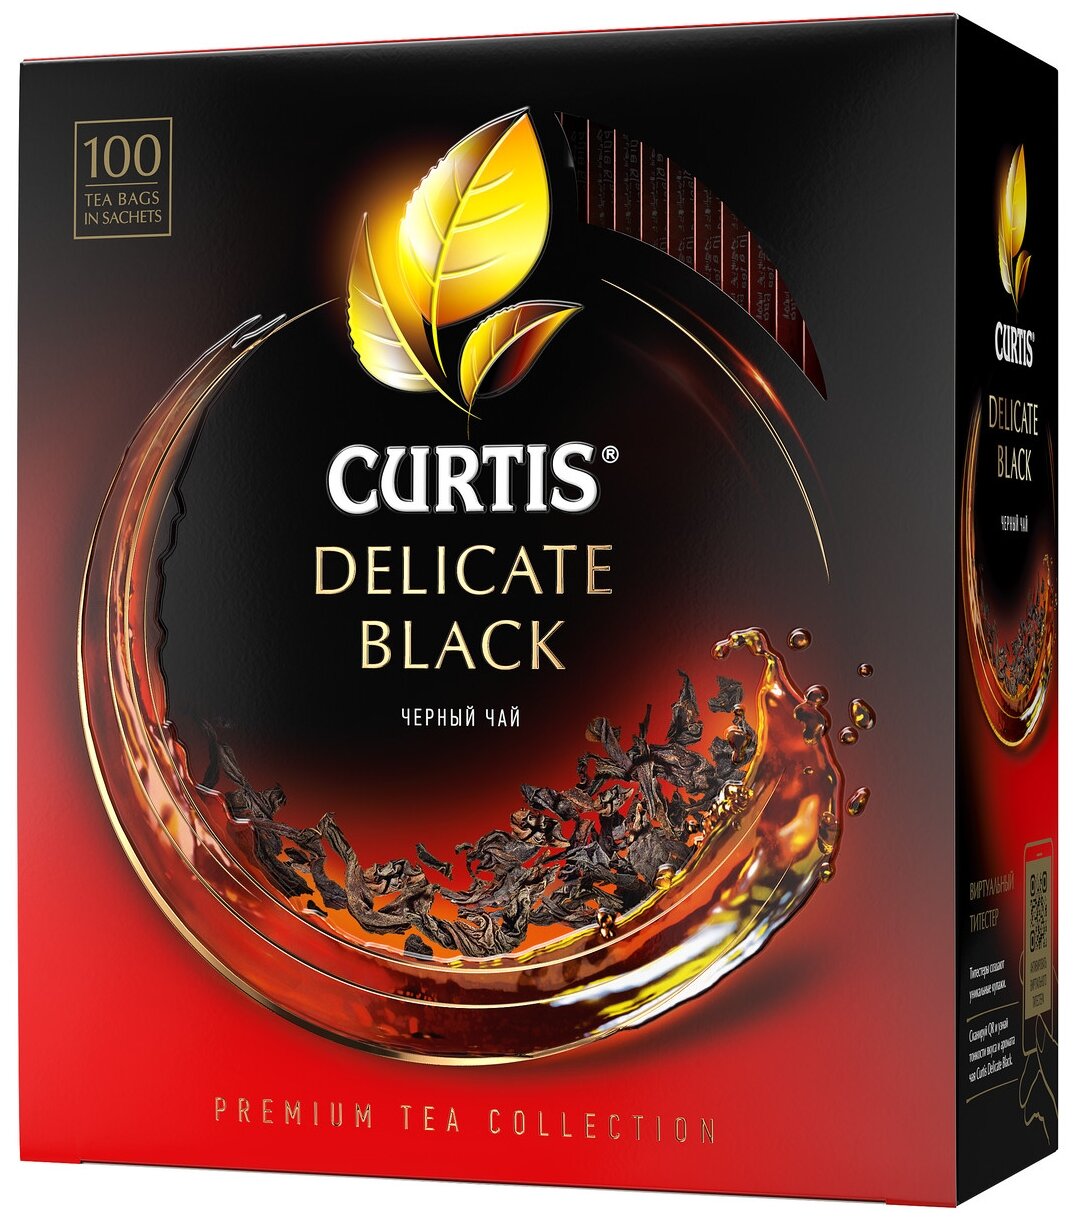 Чай черный Curtis "Delicate Black", листовой, 100 сашетов - фотография № 1